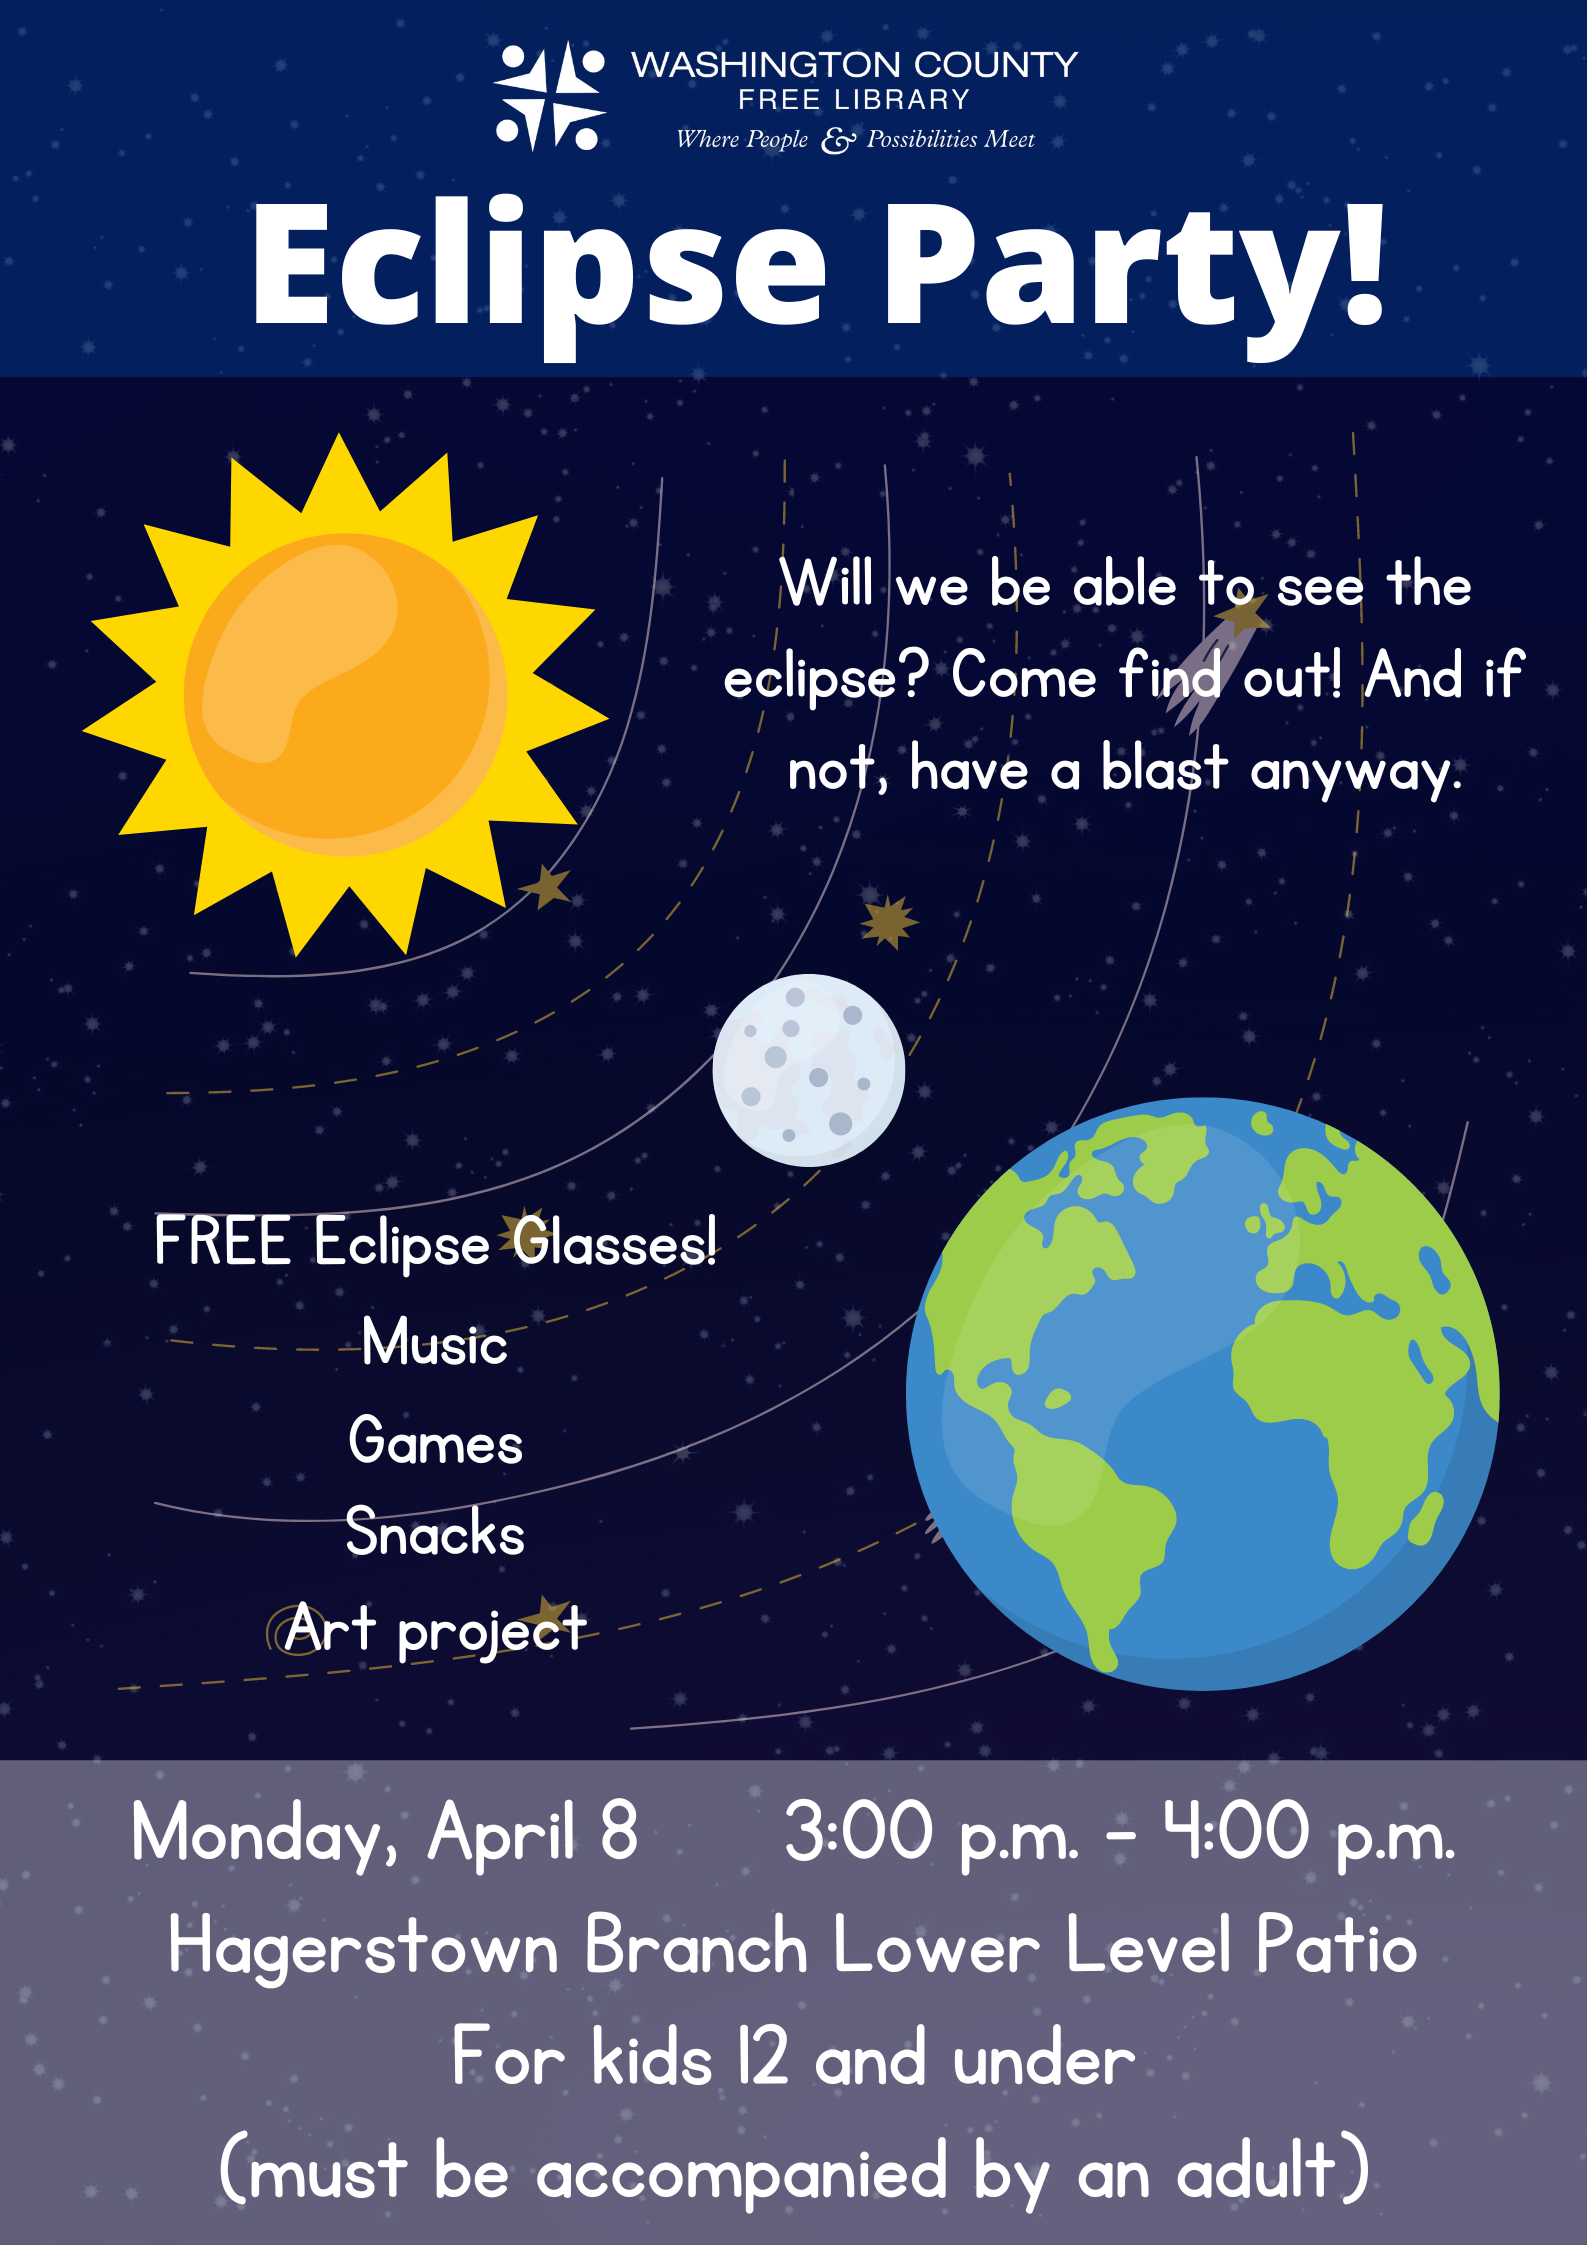 Eclipse Party April 8 3-4 p.m.